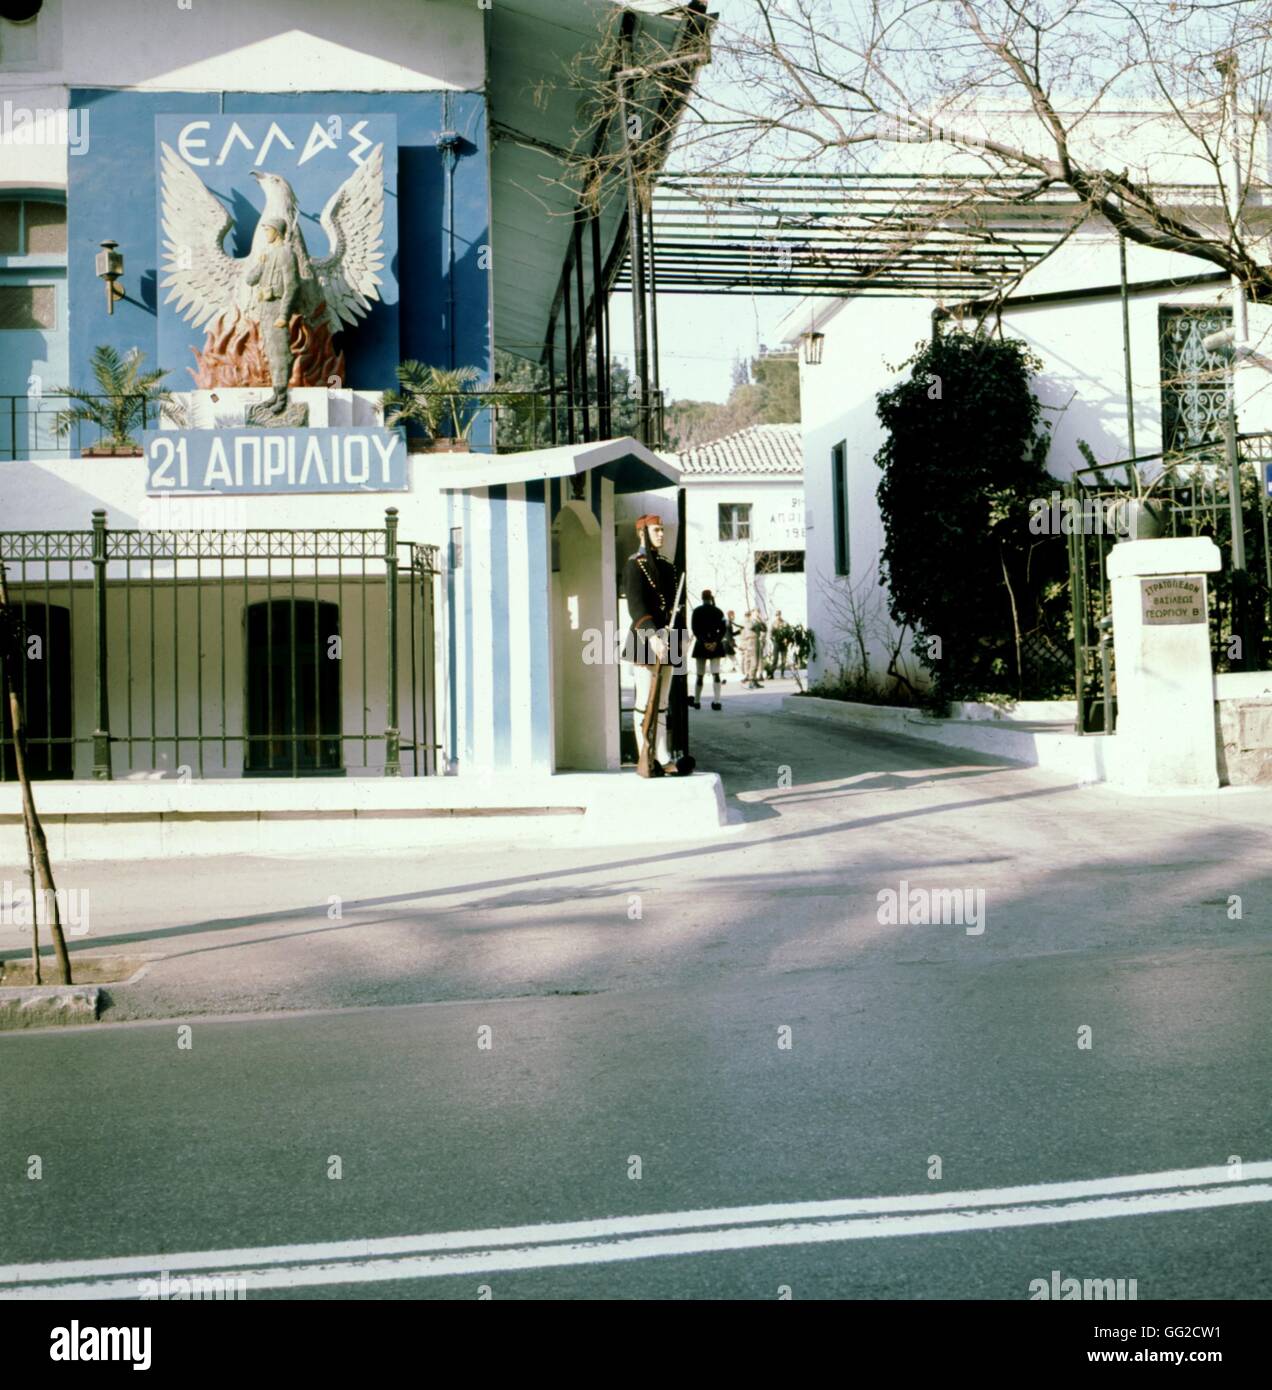 Athen, an der Wand, als Symbol für das Regime der Obristen 1972 Griechenland Fotografie Poster: Grivas Stockfoto